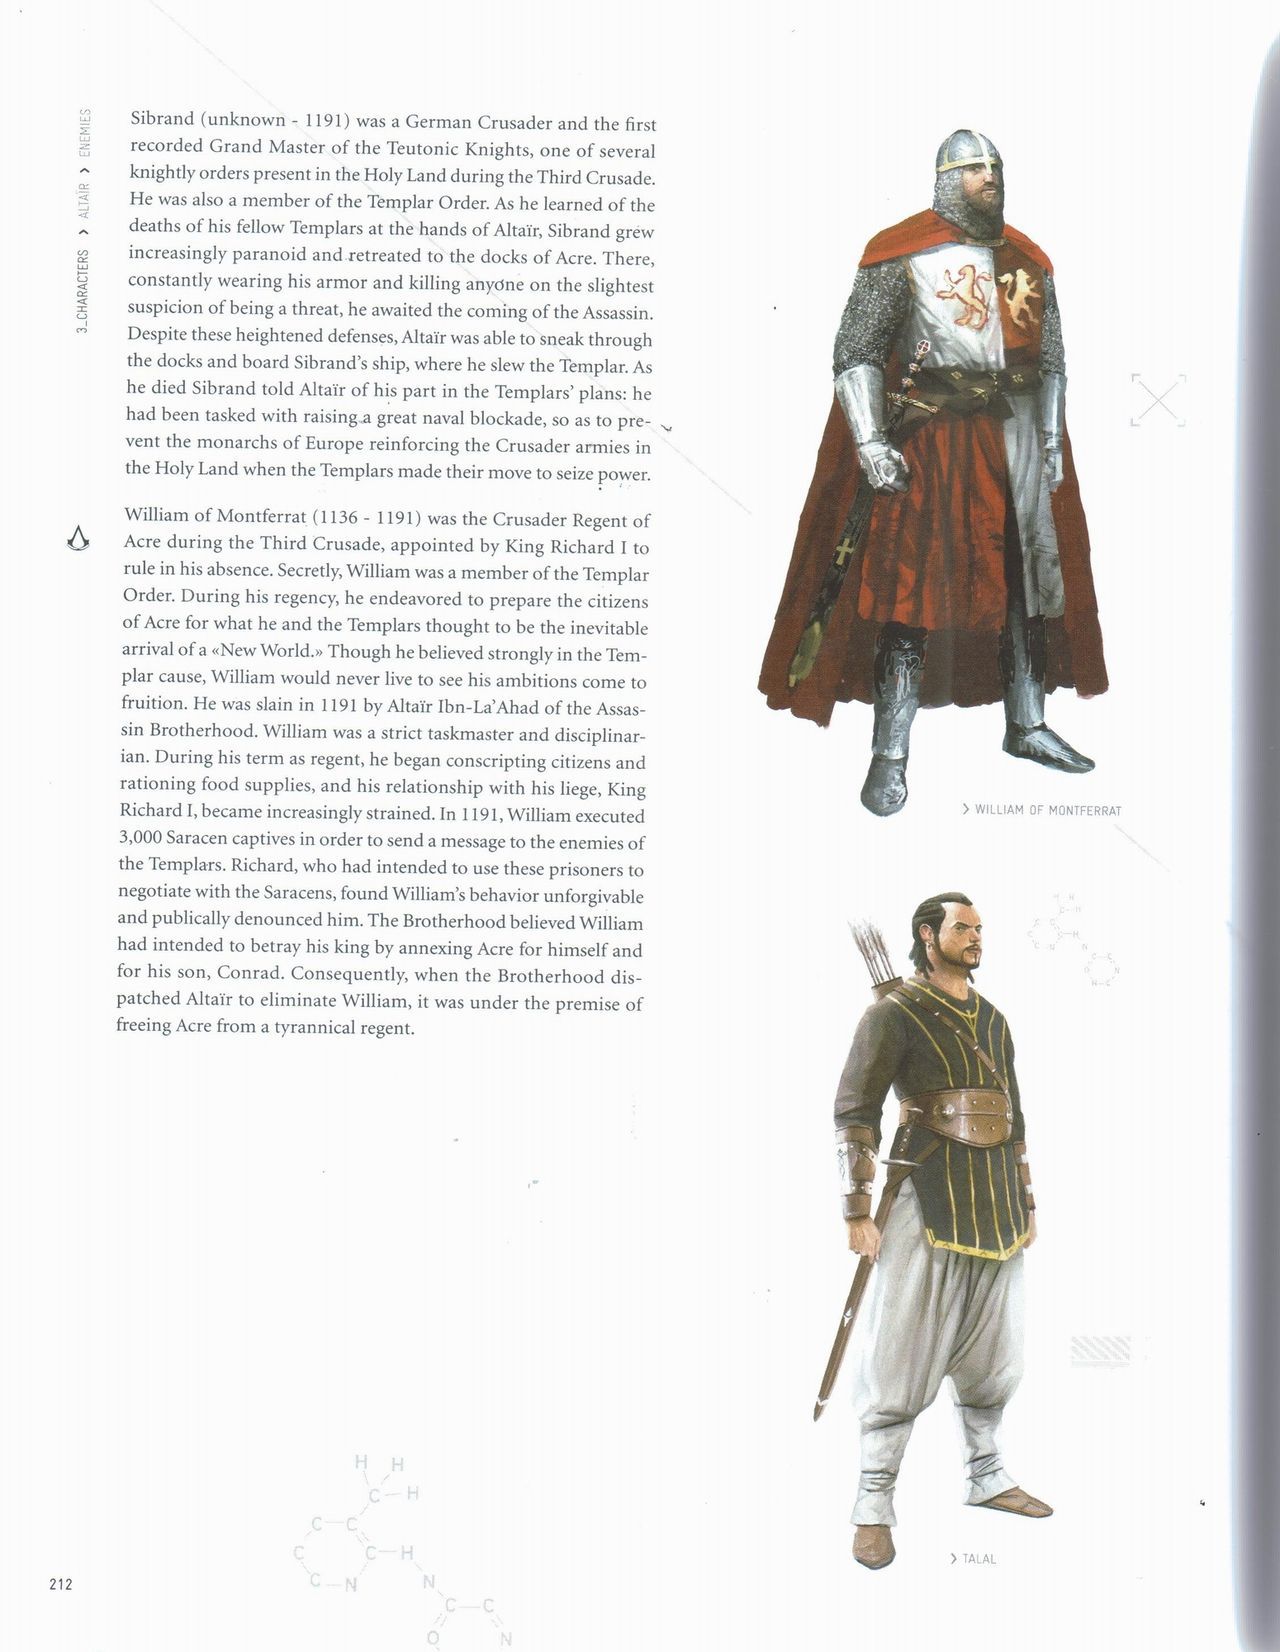 Assassin's Creed Encyclopedia 2.0 213